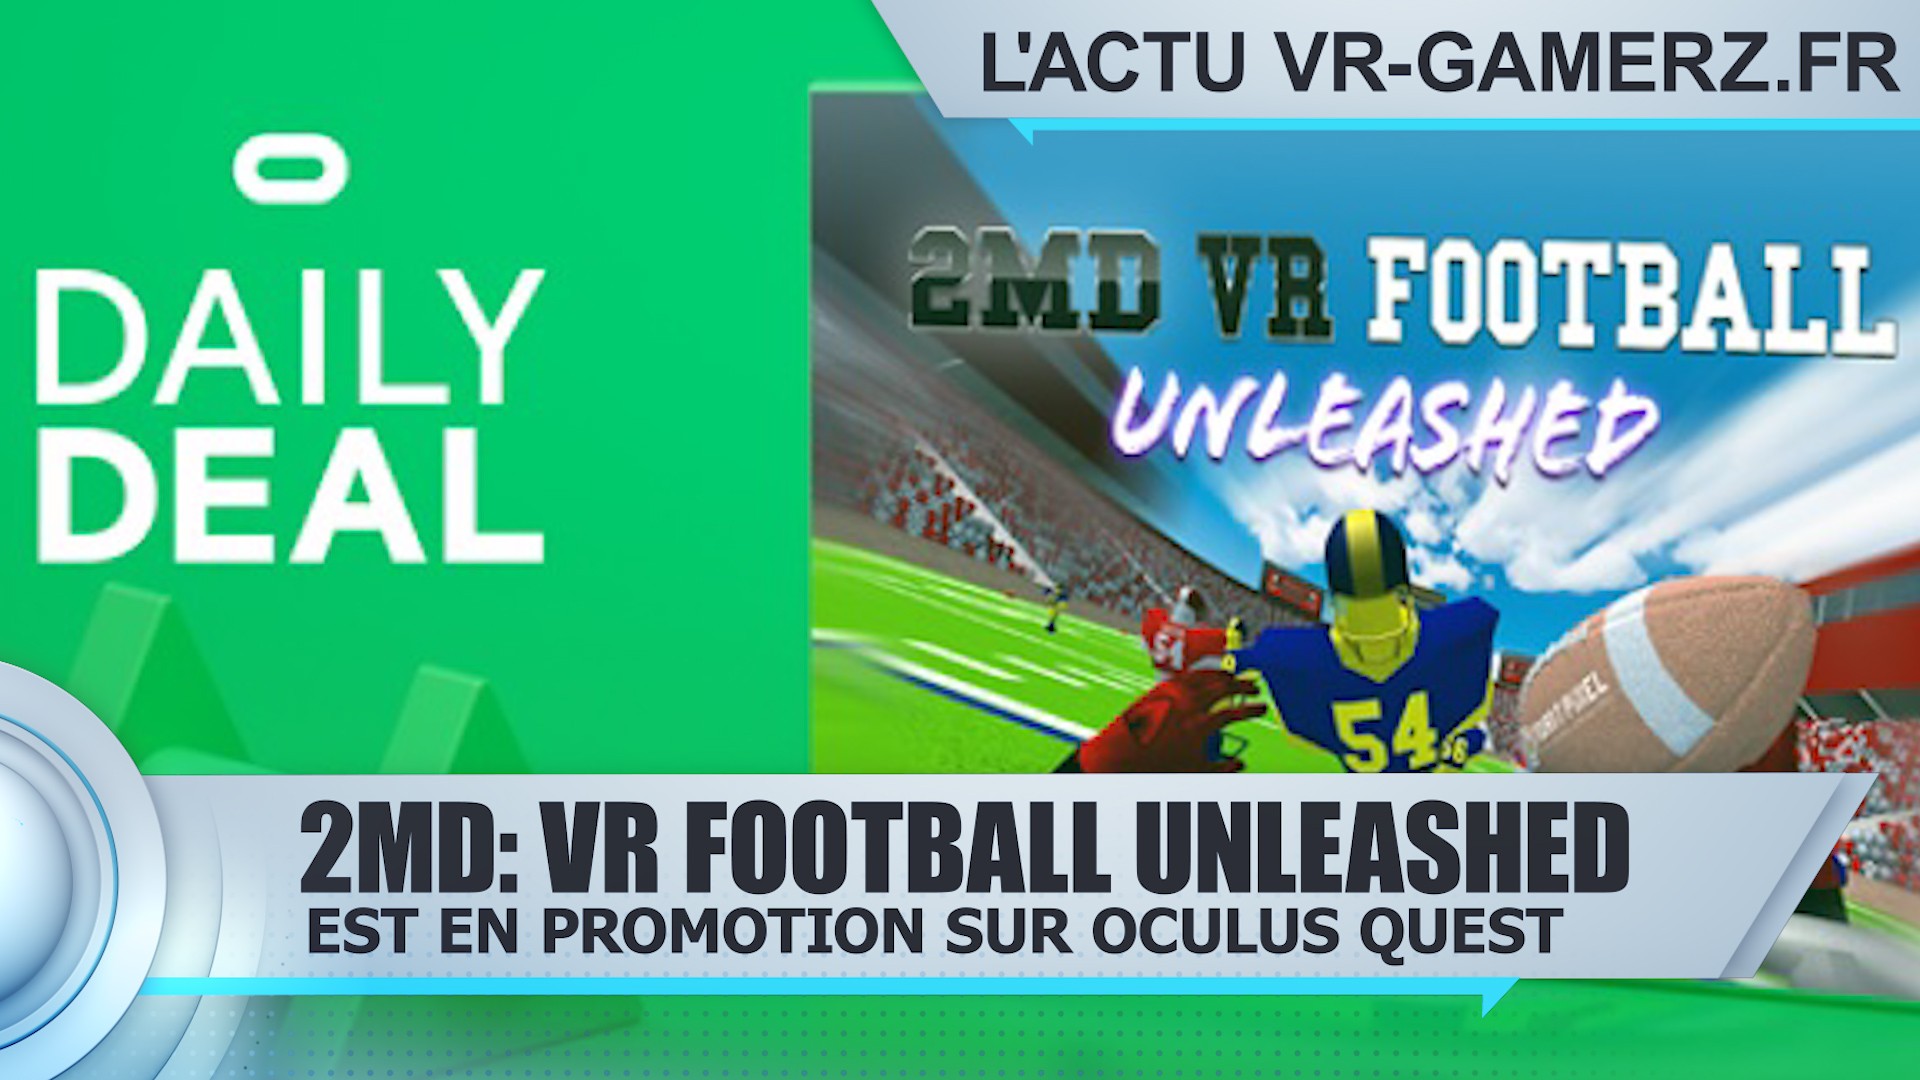 2MD: VR Football Unleashed est en promotion sur Oculus quest